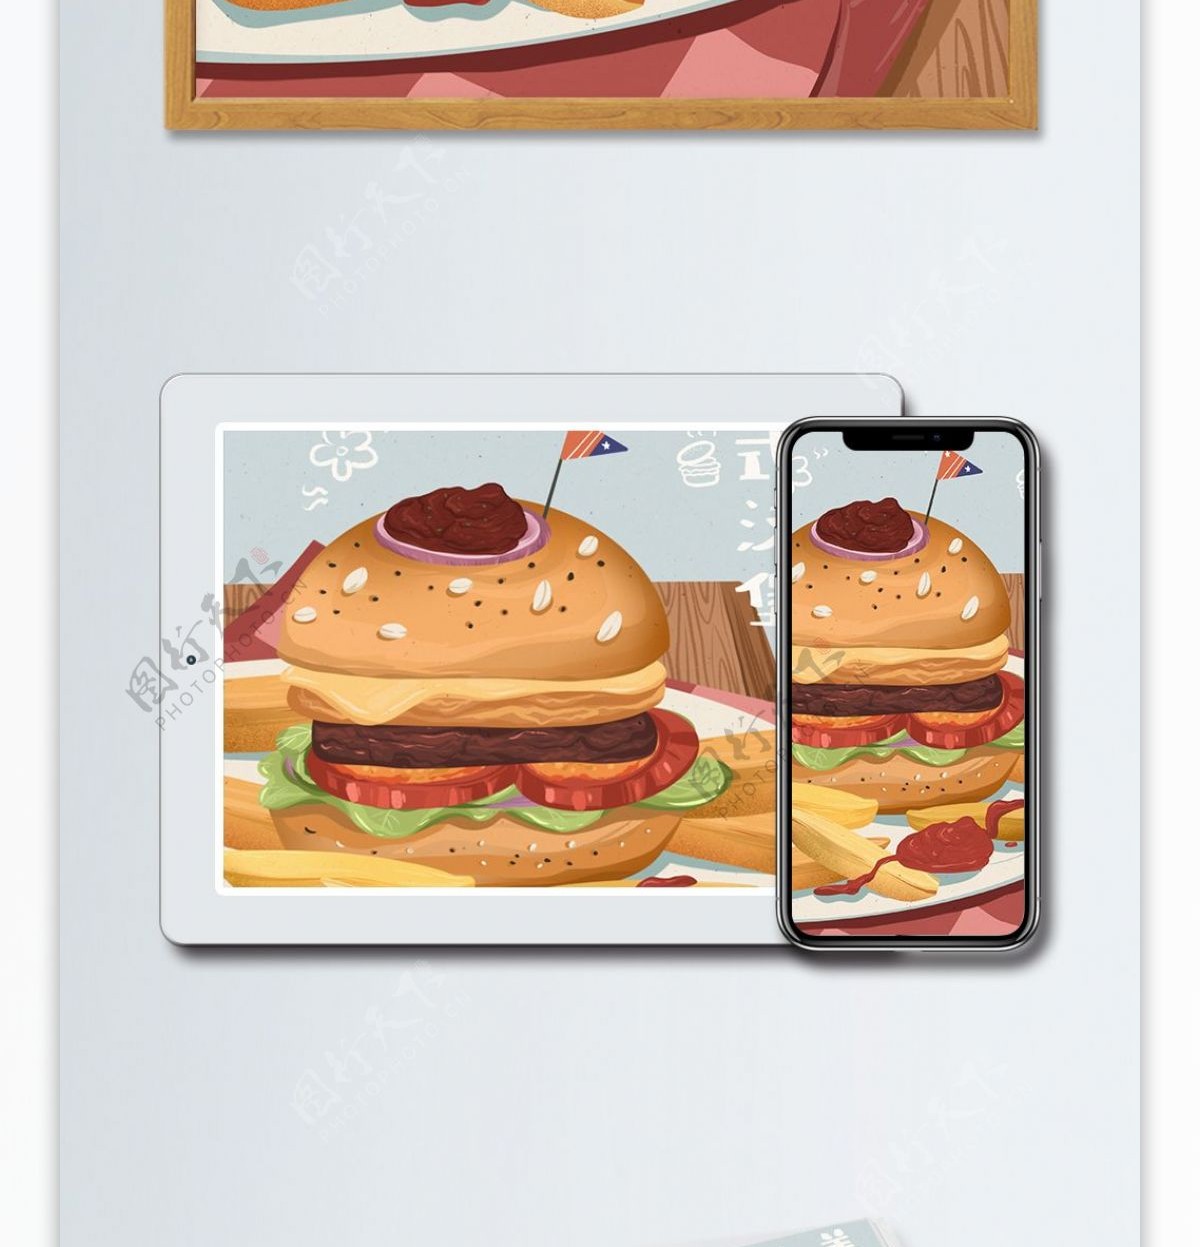 地方特色美食之美式汉堡写实小清新插画